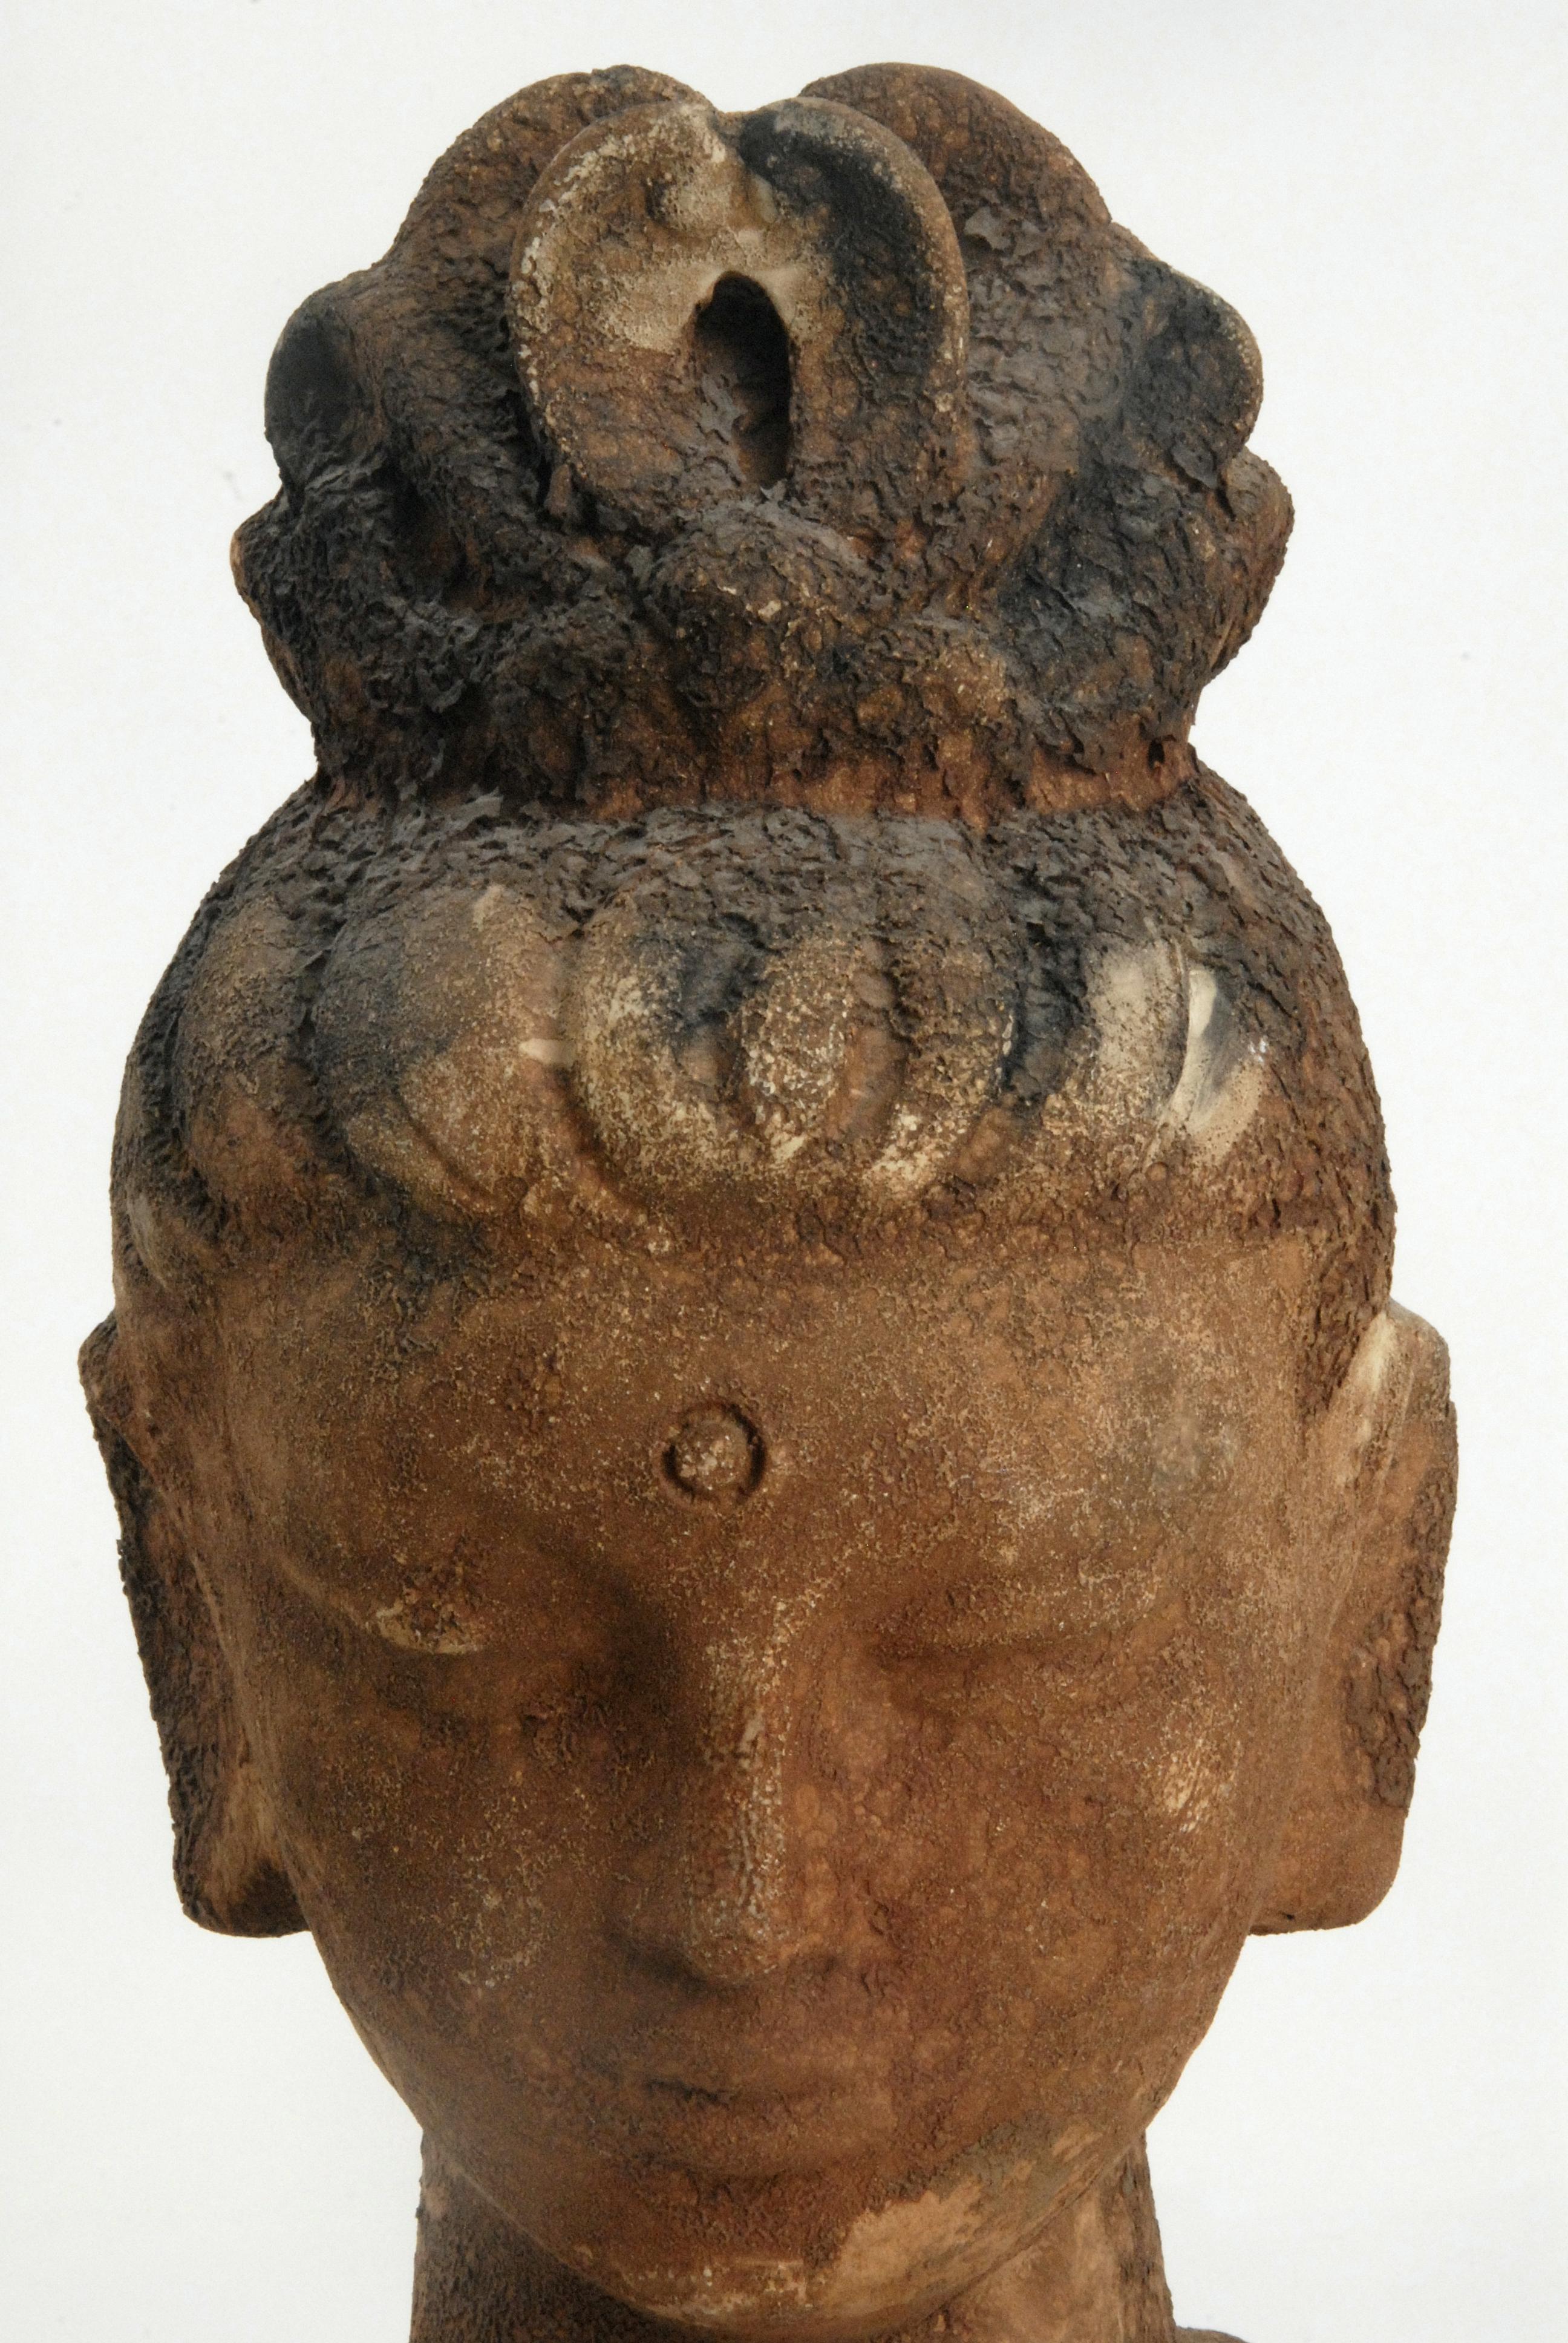 Ein von Aldo Londi entworfener glasierter Kopf der Guan Yin, der Göttin des Mitgefühls, der Barmherzigkeit und der Güte, von Scavo. Die Glasur erinnert an eine ausgegrabene antike Steinskulptur.